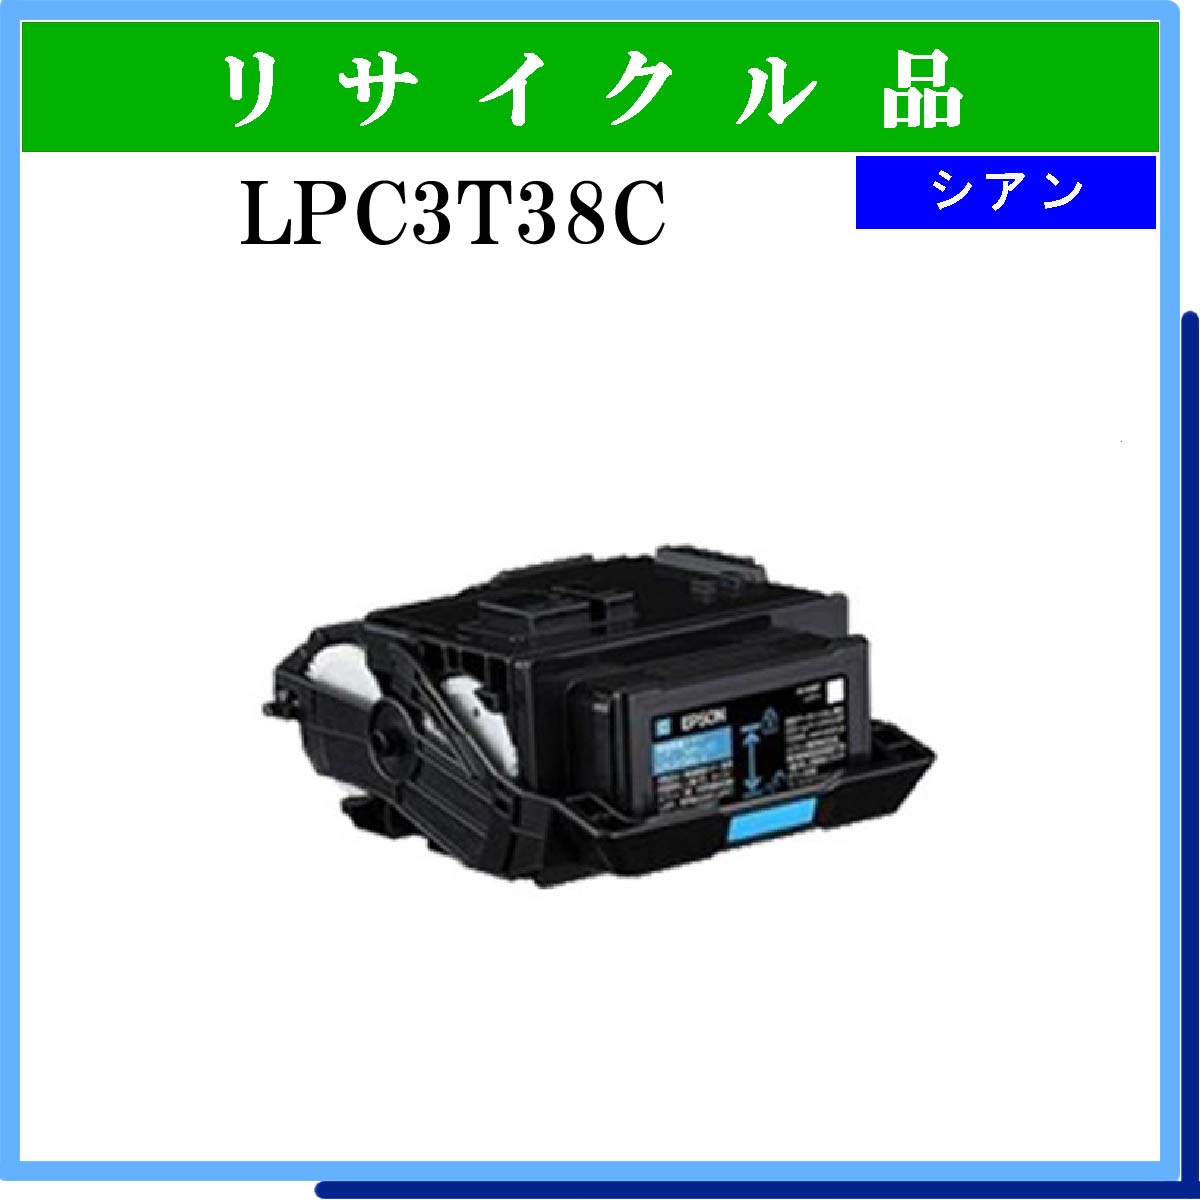 LPC3T38C